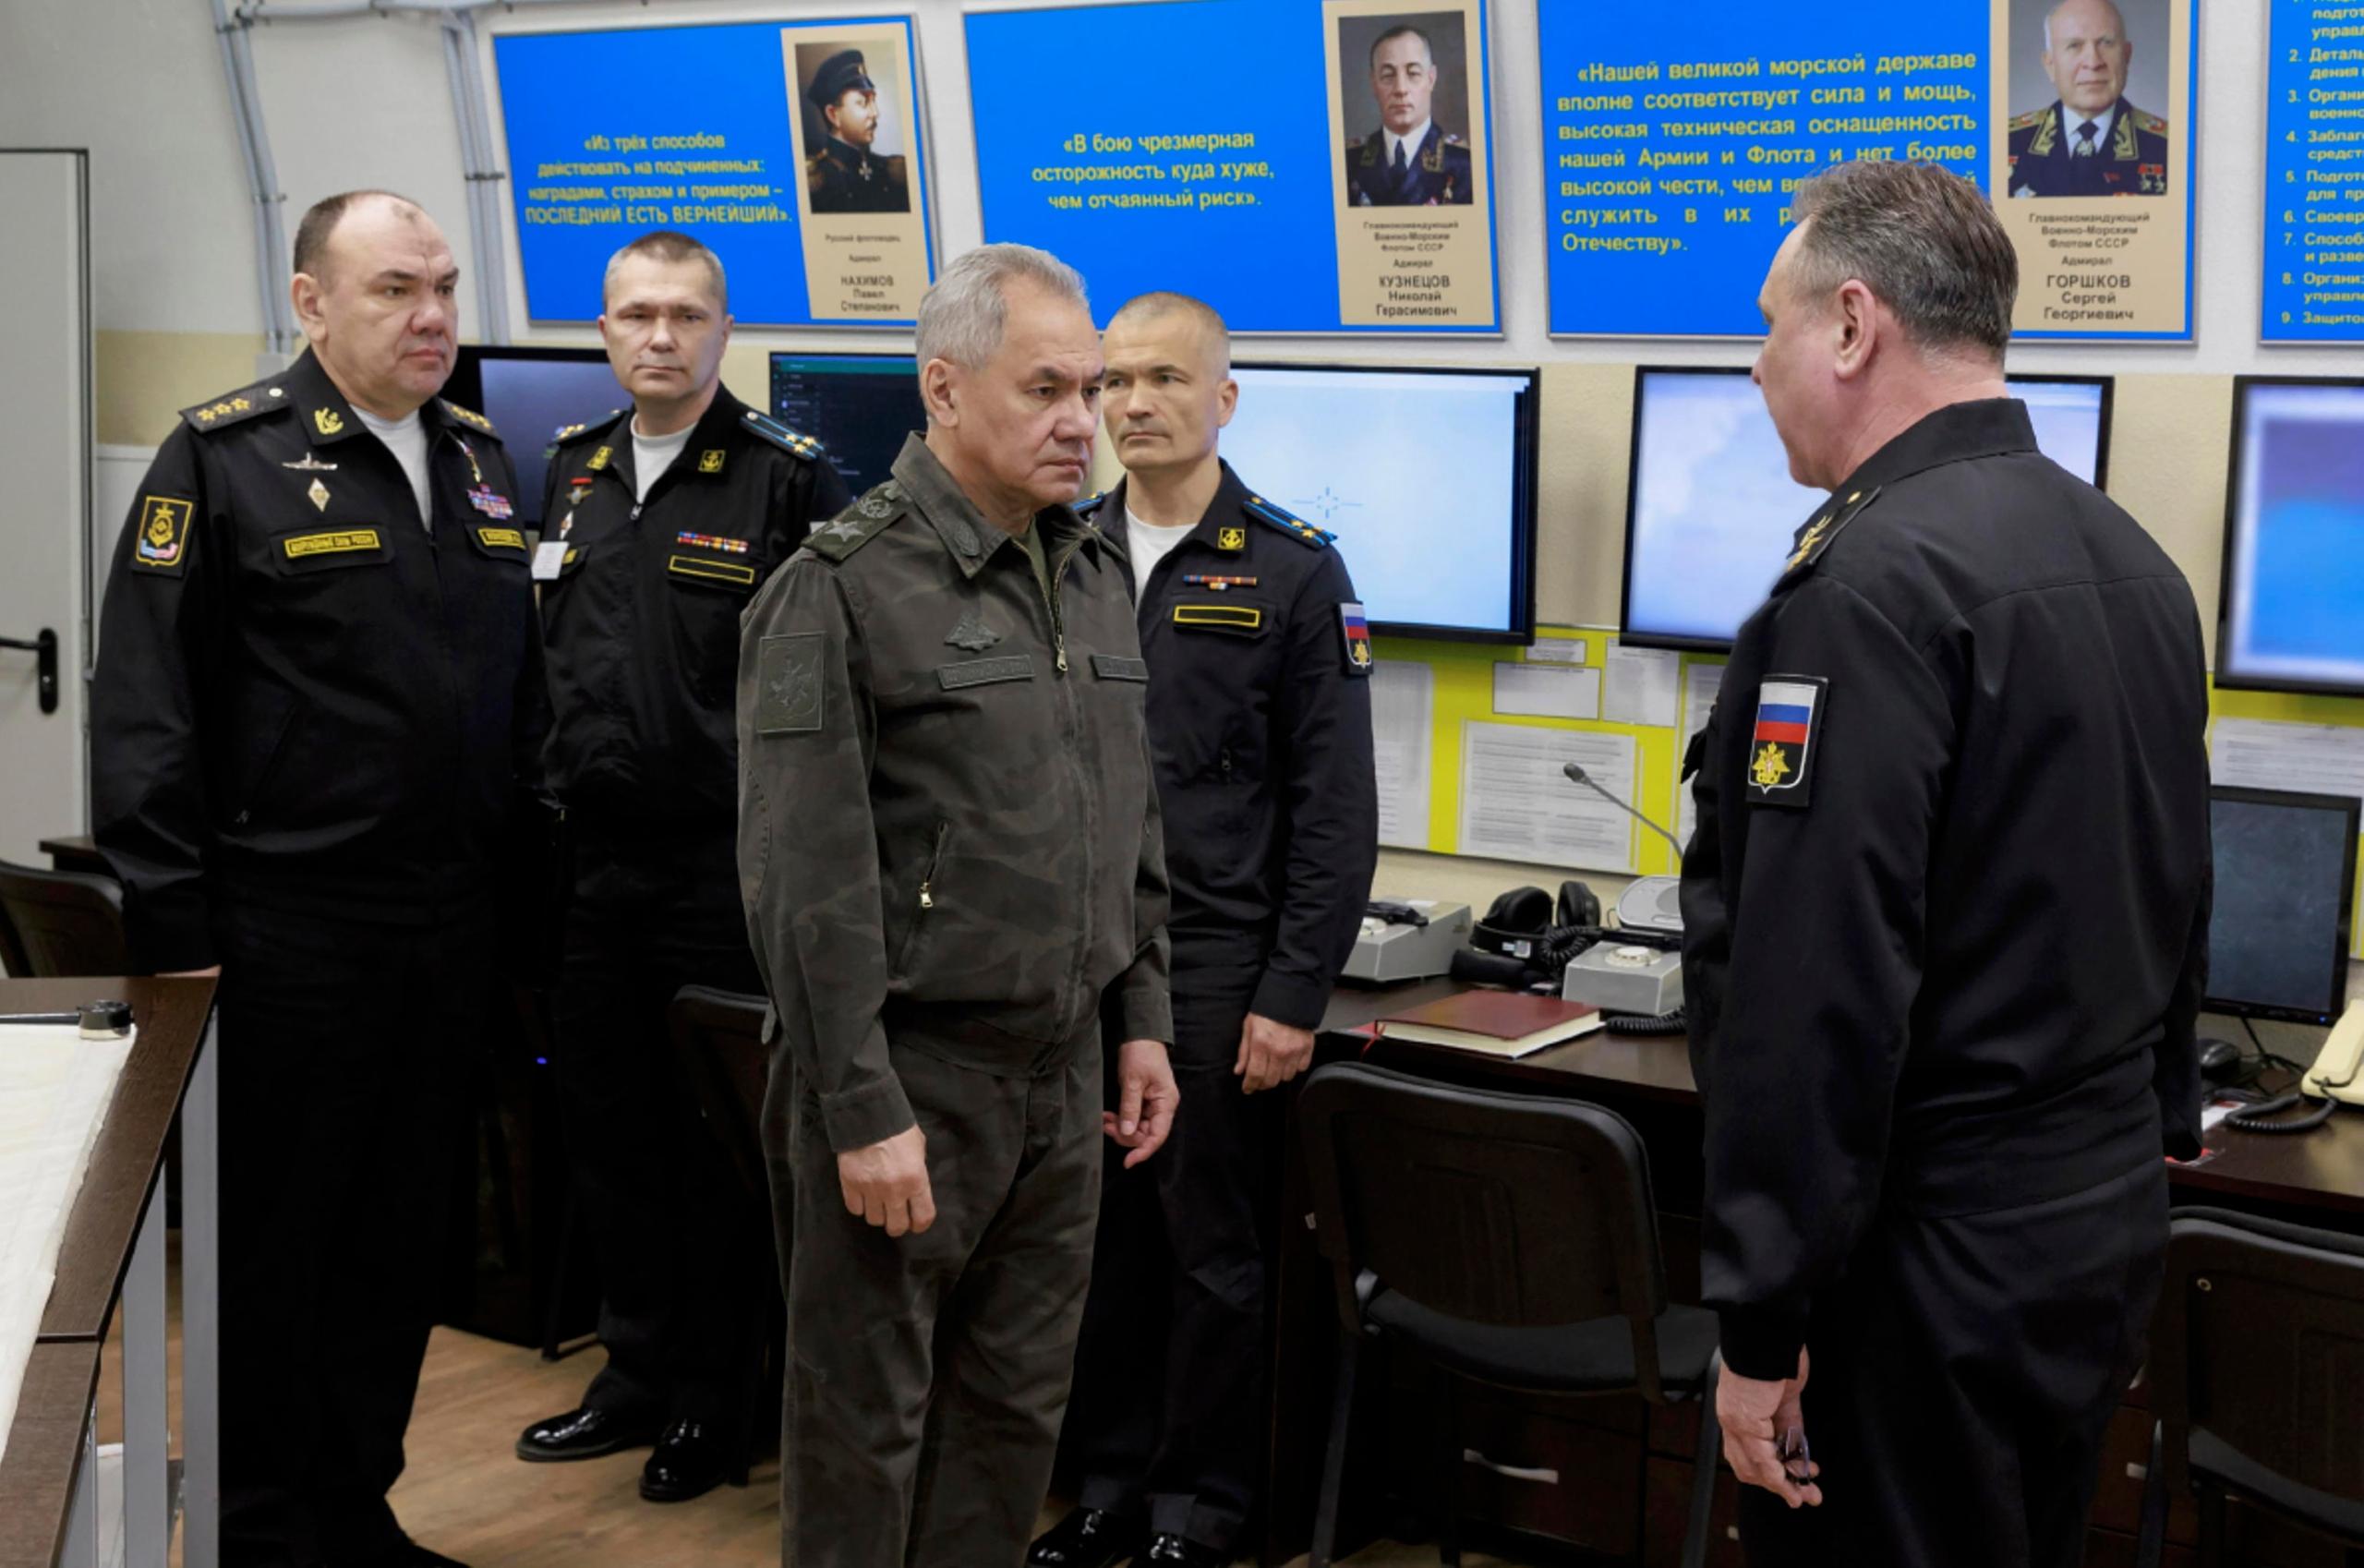 Putin silura il capo della Marina russa: Moiseyev, nuovo comandante. Mosca: “Orlivka è caduta”